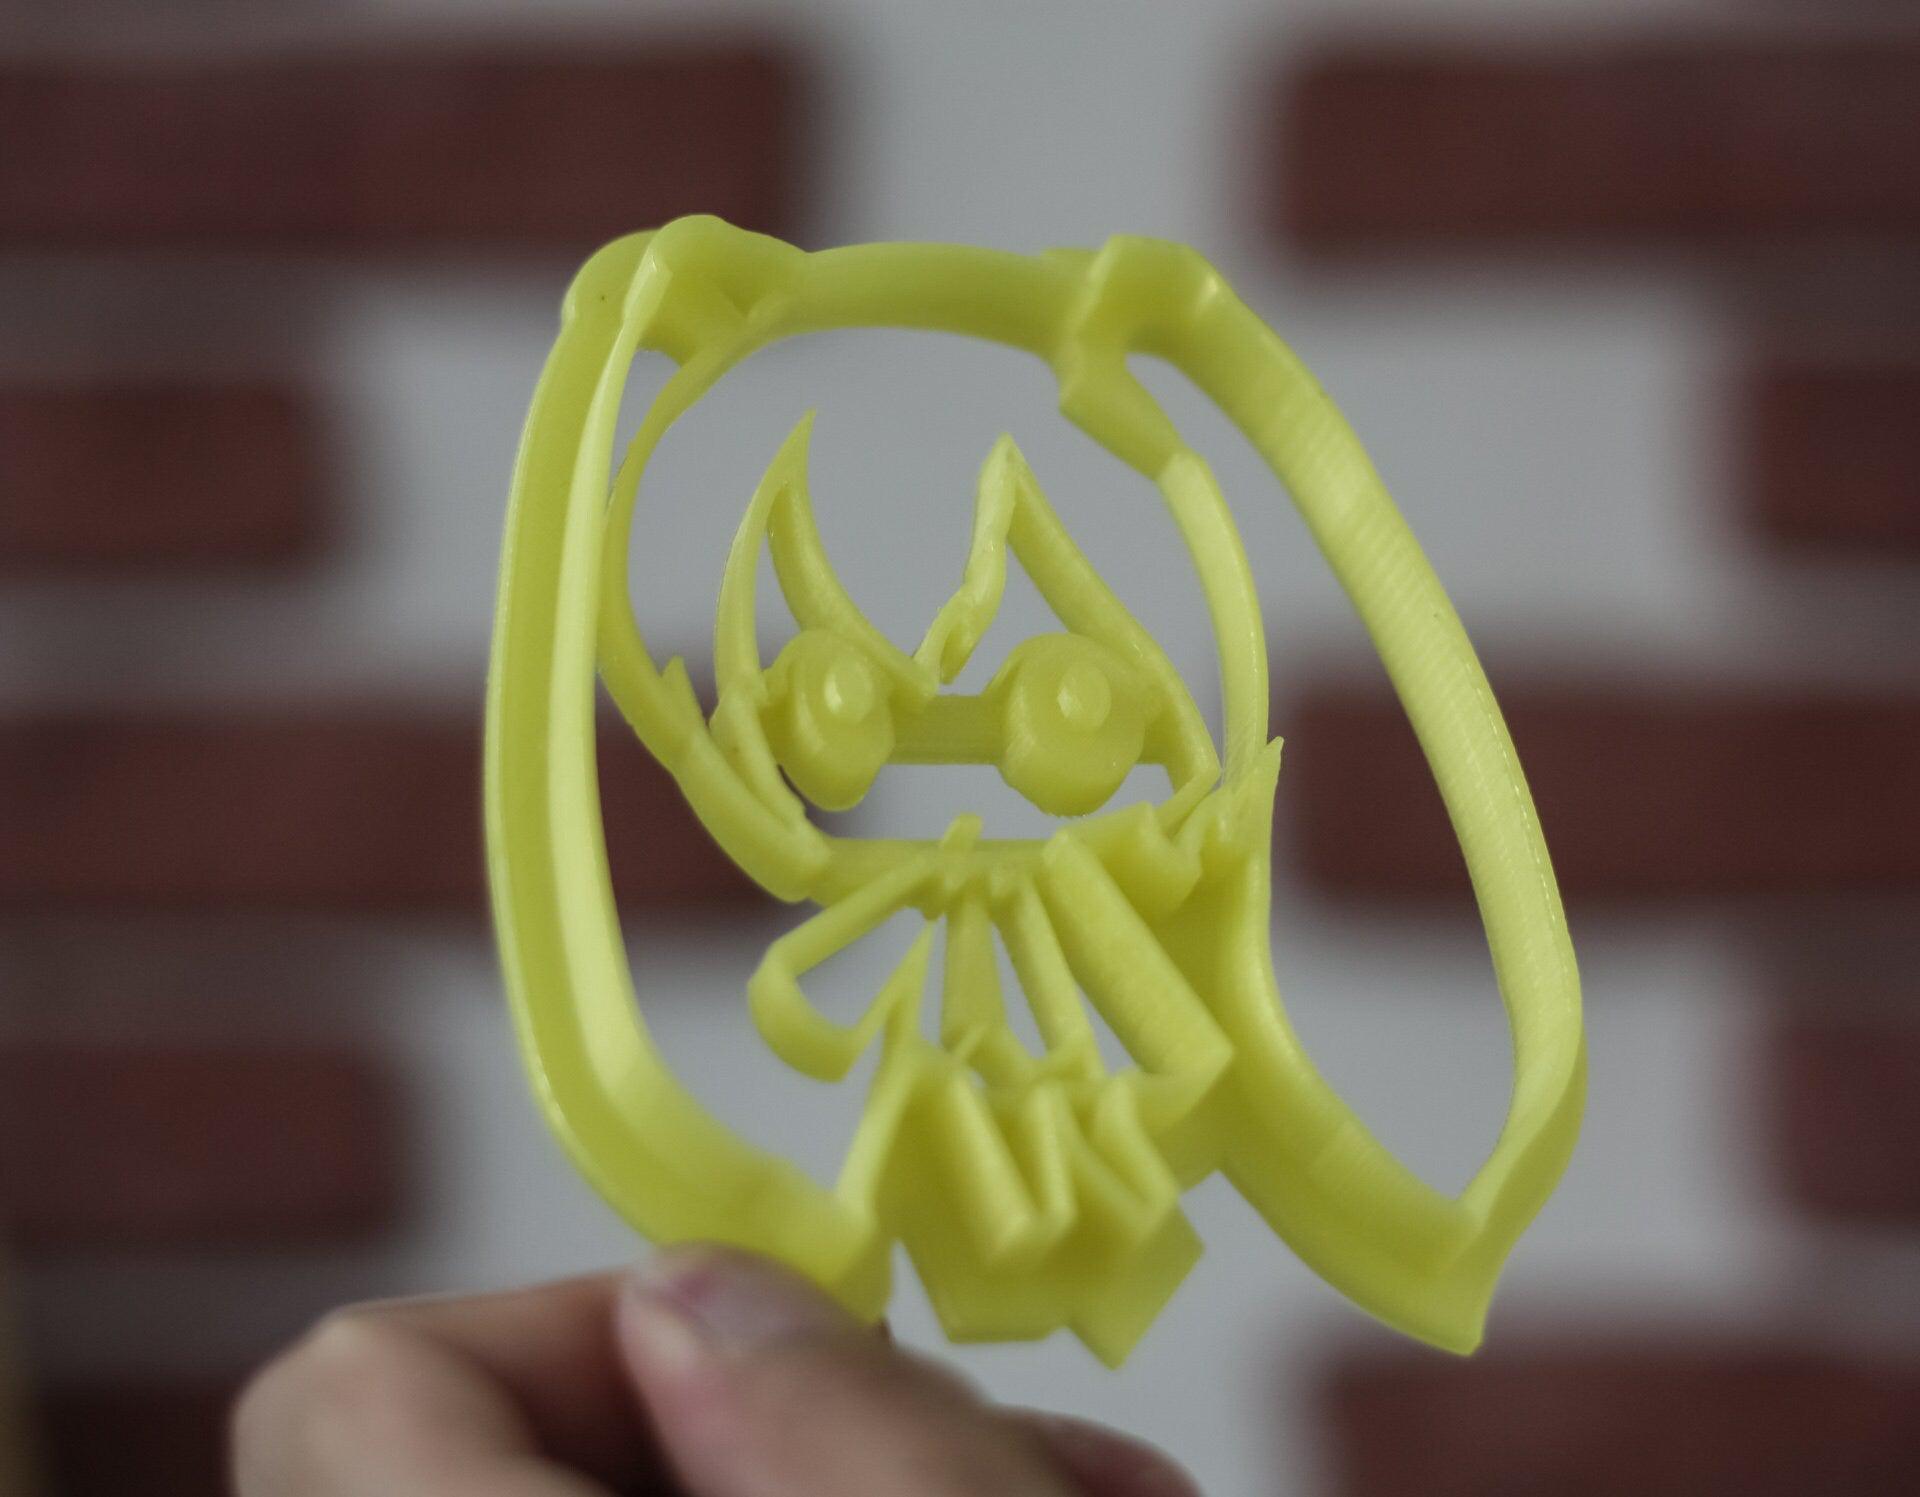 Hatsune Miku Cookie Cutter | Anime Gifts | unique cookie cutter | biscuit cutter | custom cookie cutter 3d cookie cutters fondant cutters - 3DPrintProps